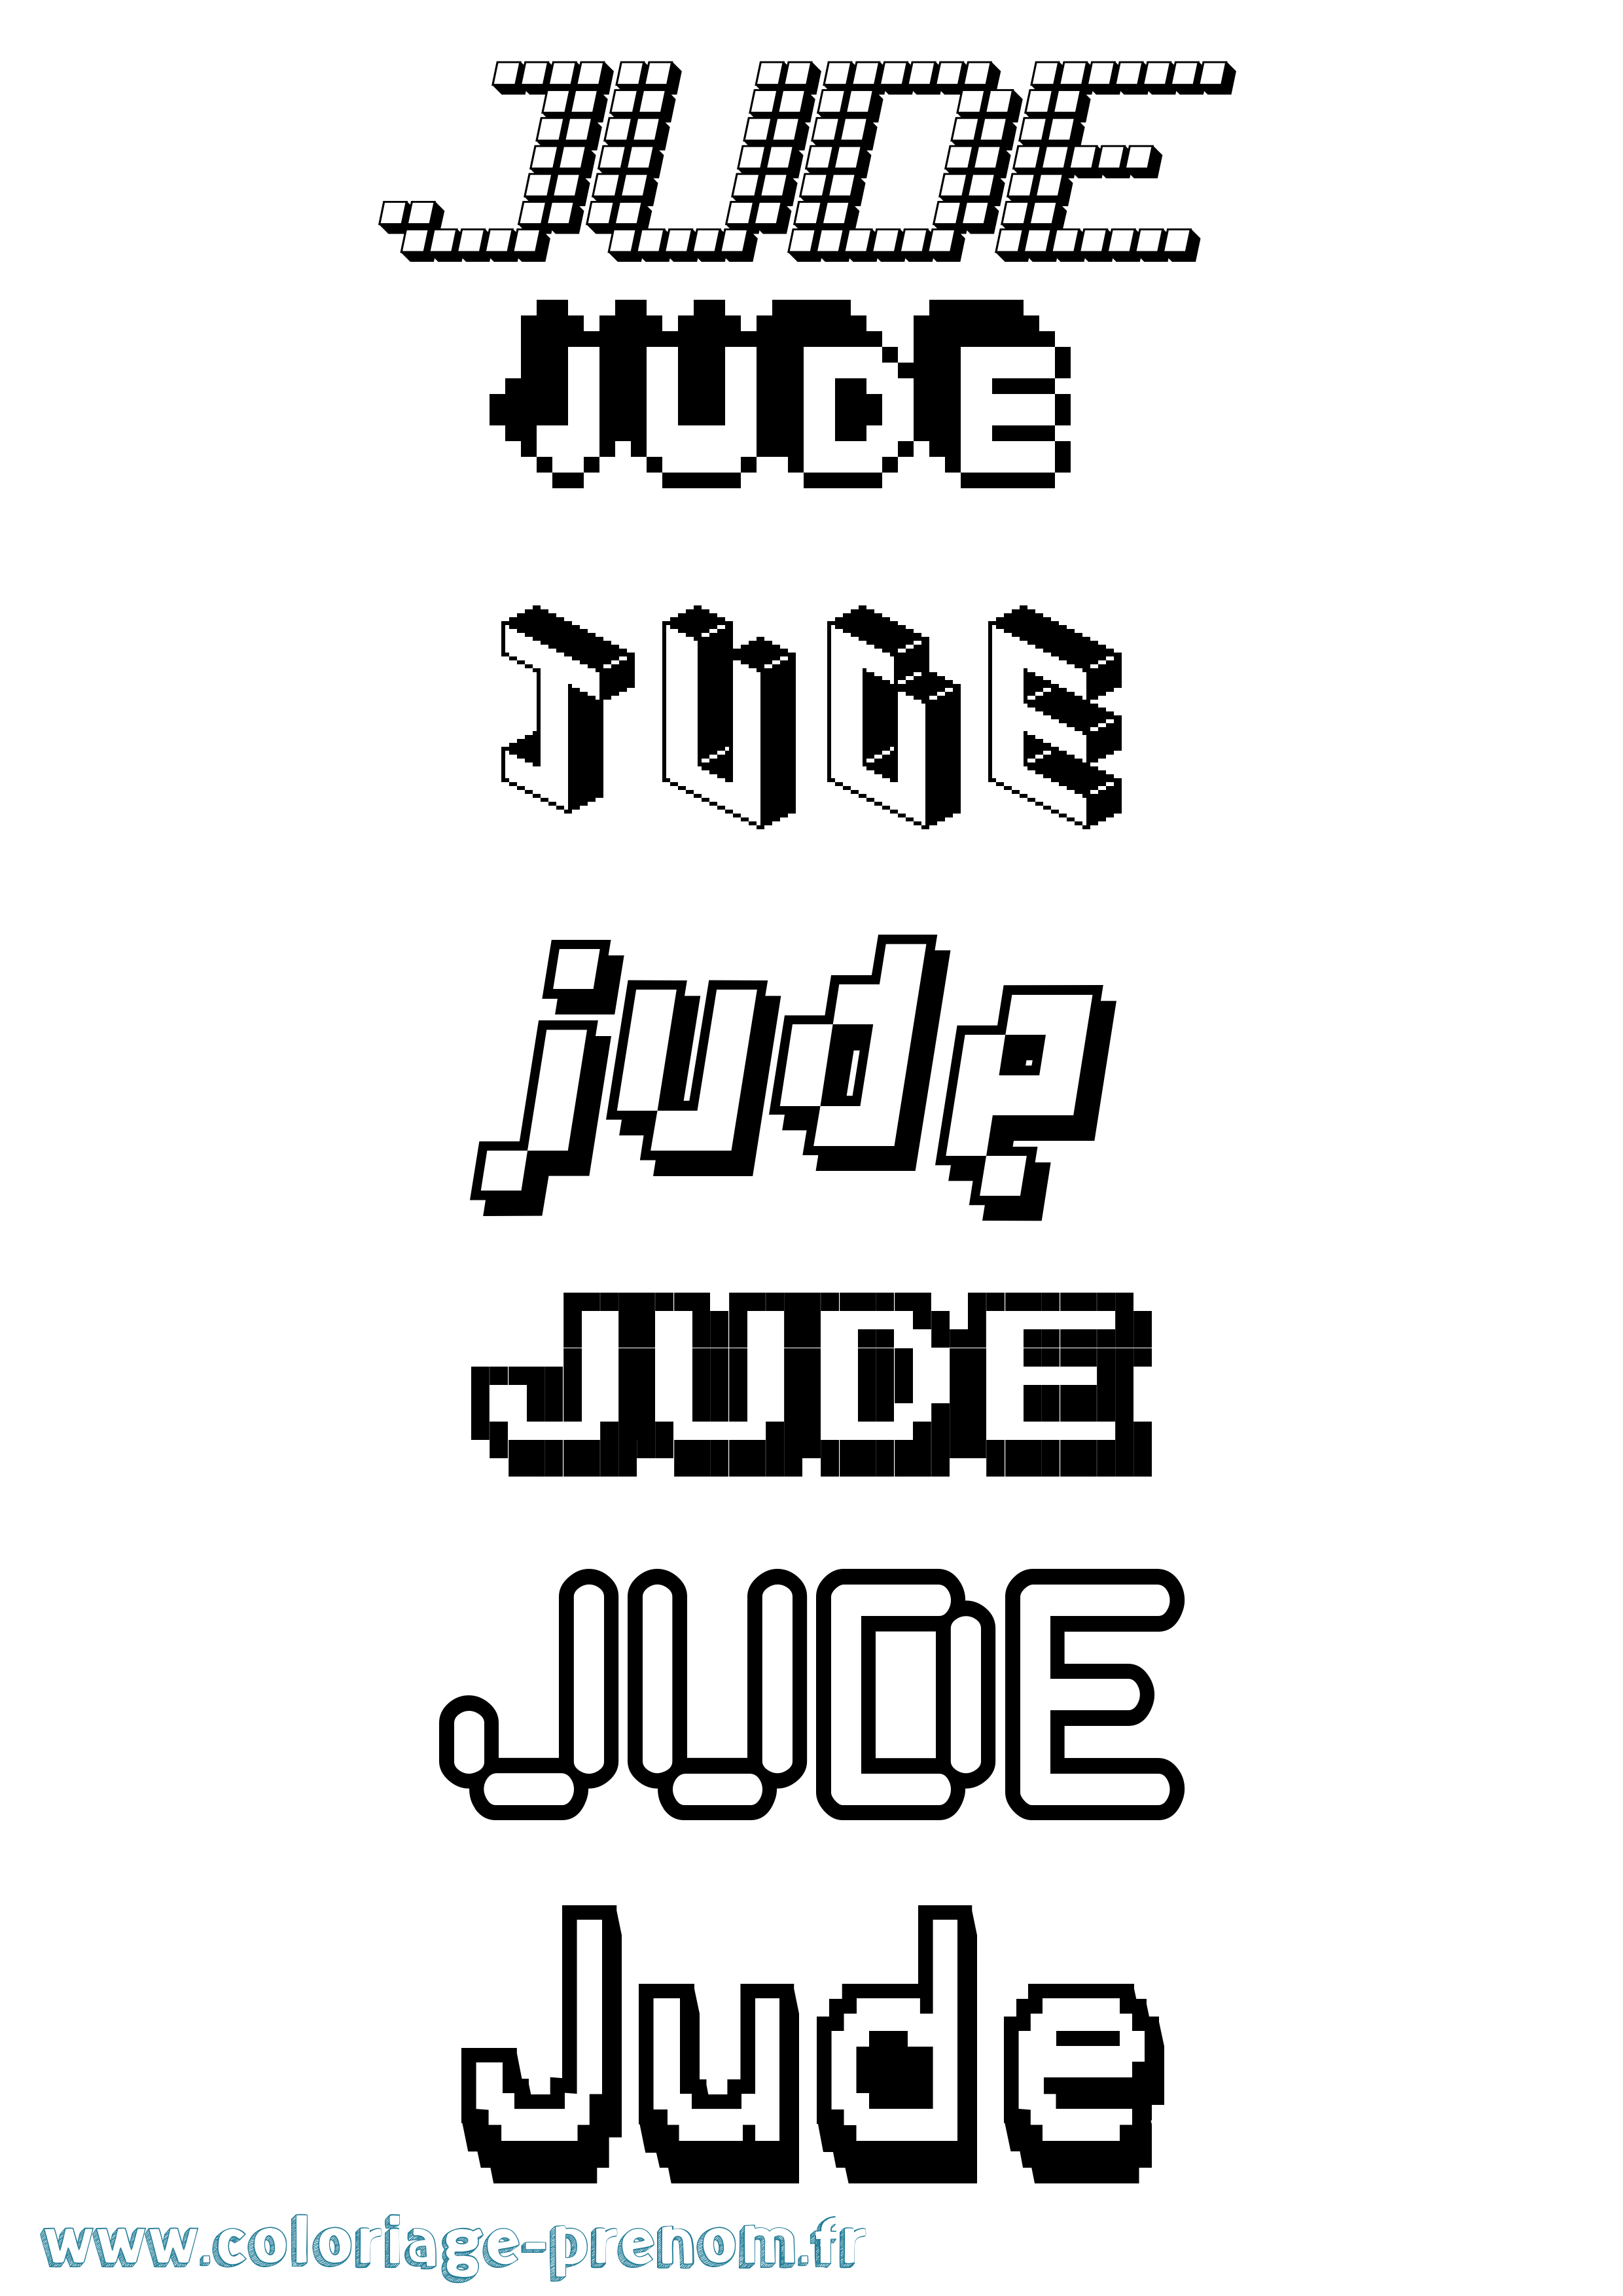 Coloriage prénom Jude Pixel